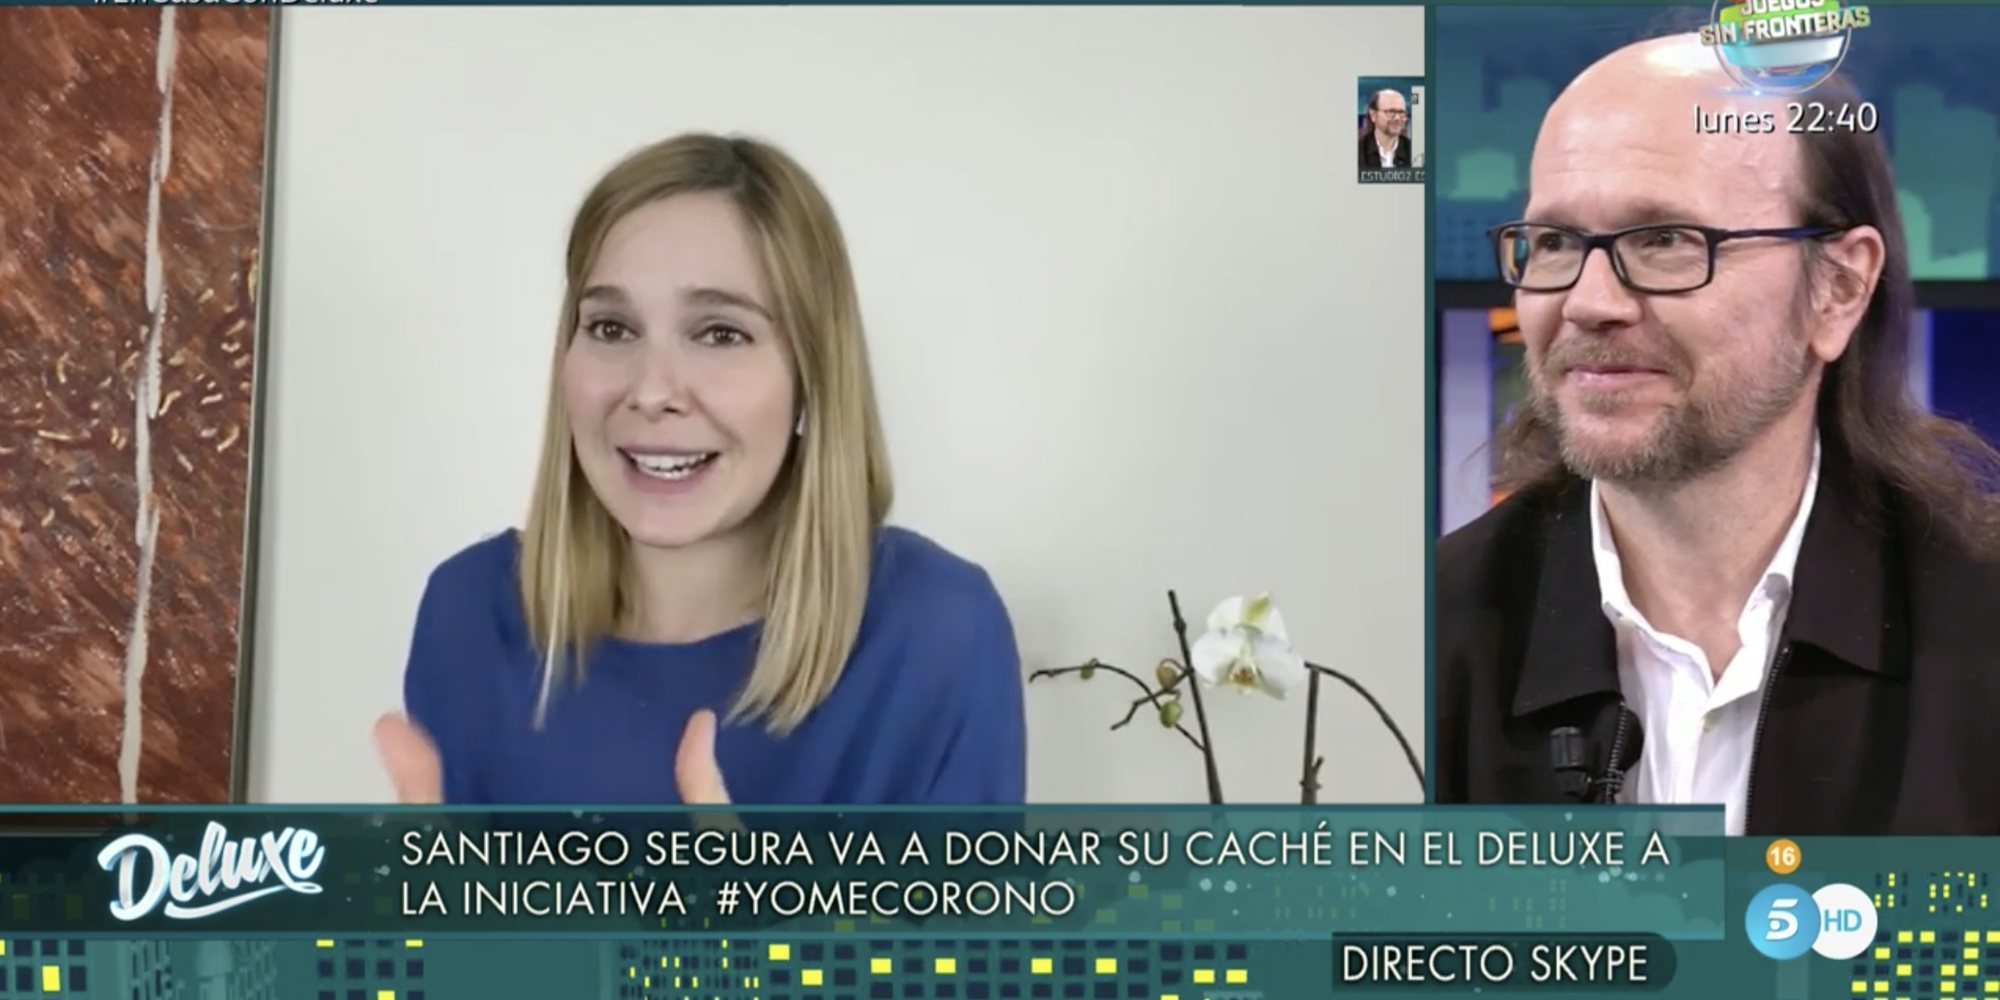 Santiago Segura dona el dinero del caché de su entrevista en 'Sábado Deluxe' a la iniciativa #yomecorono